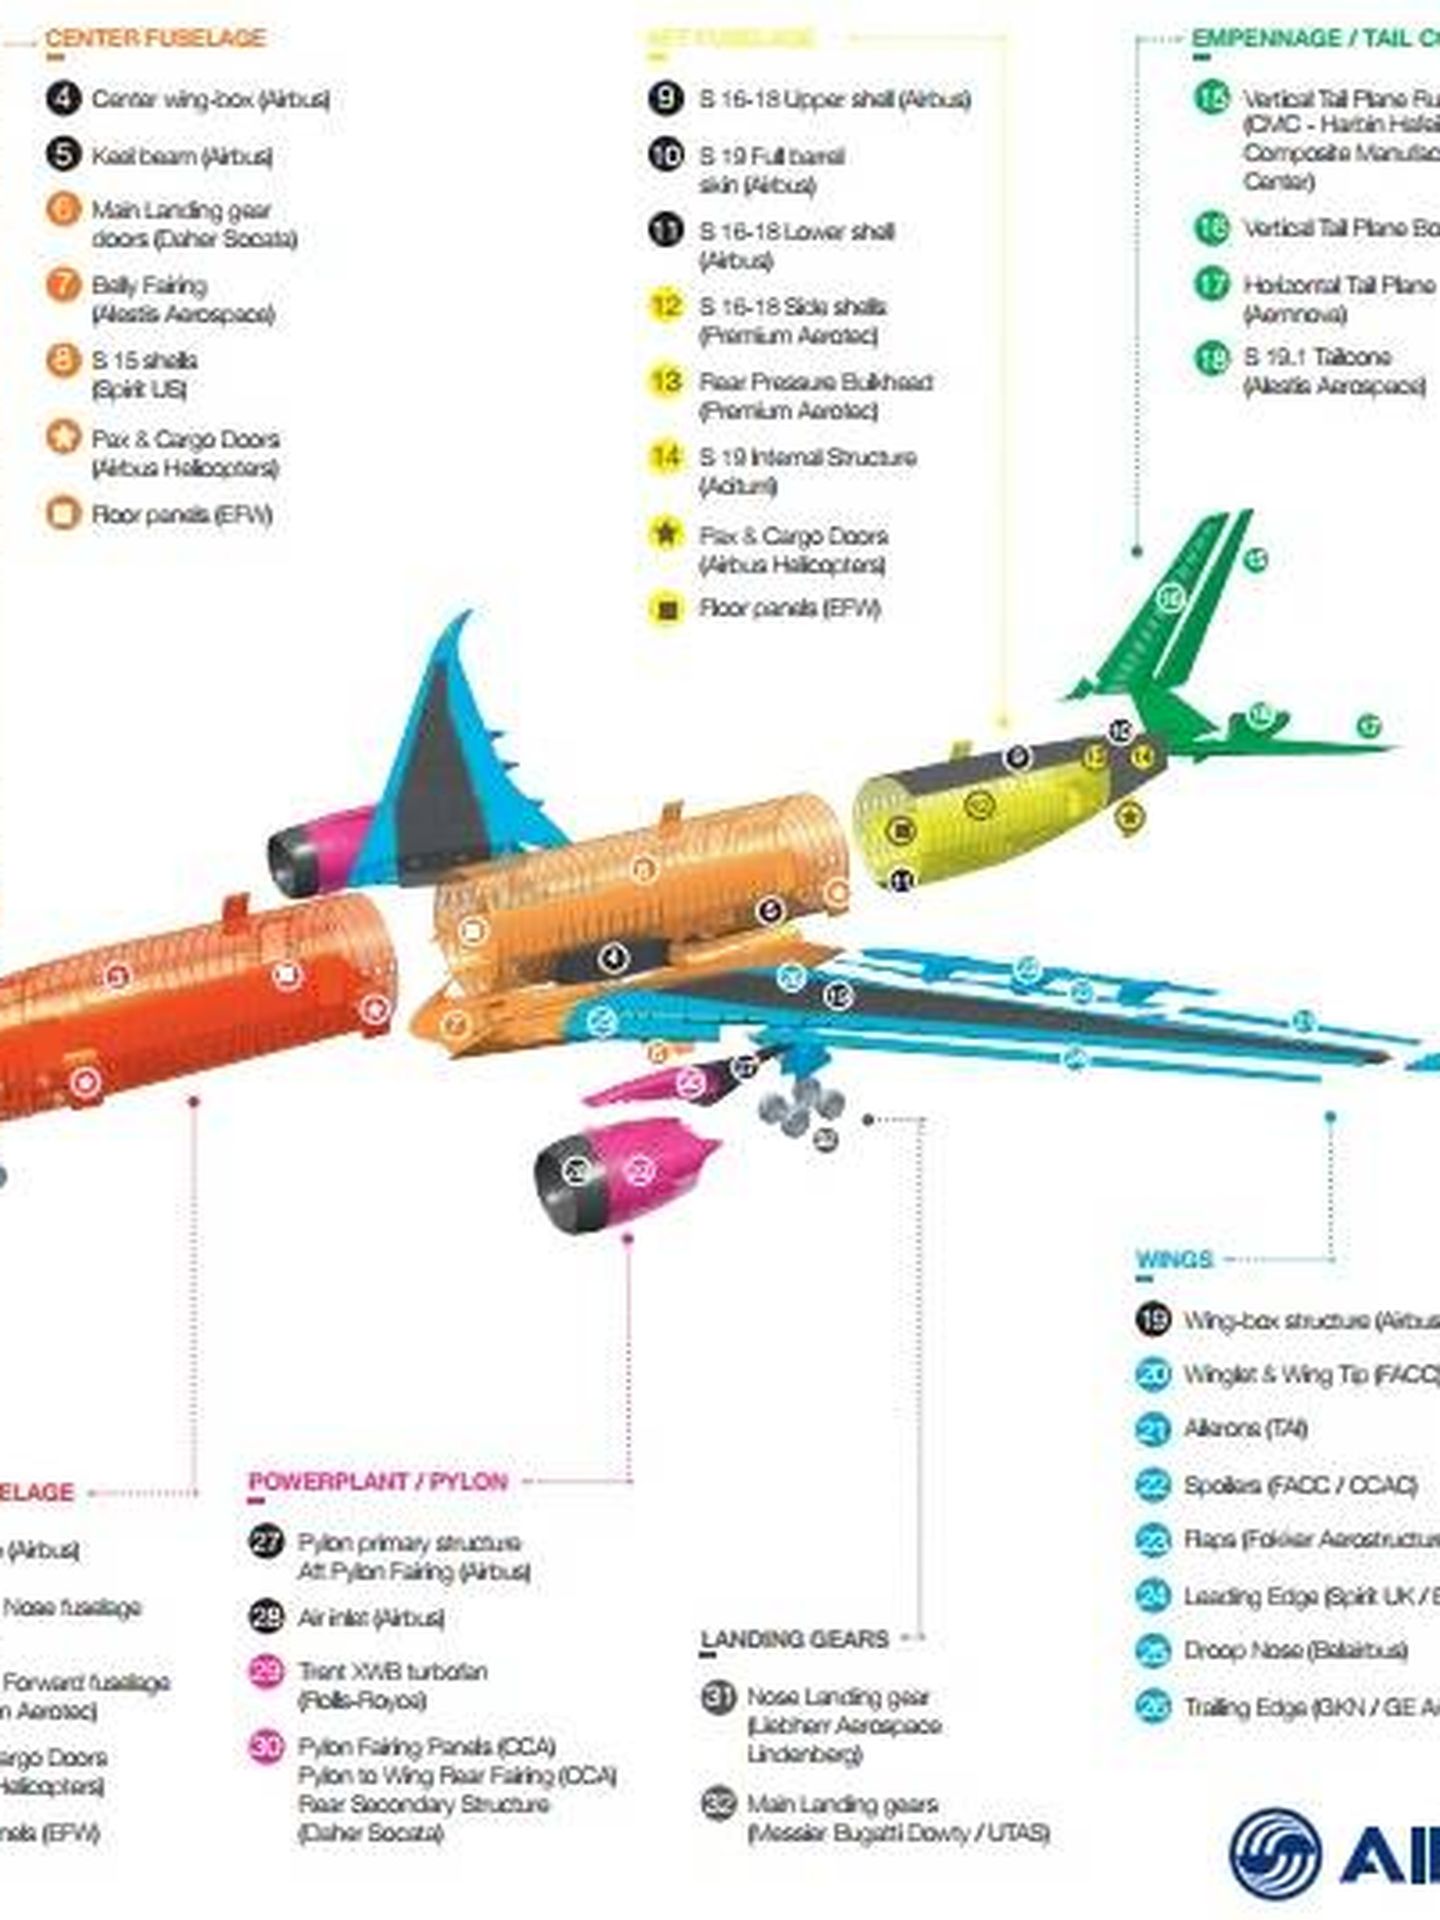 Fabricación del A350 por empresas. (Airbus)